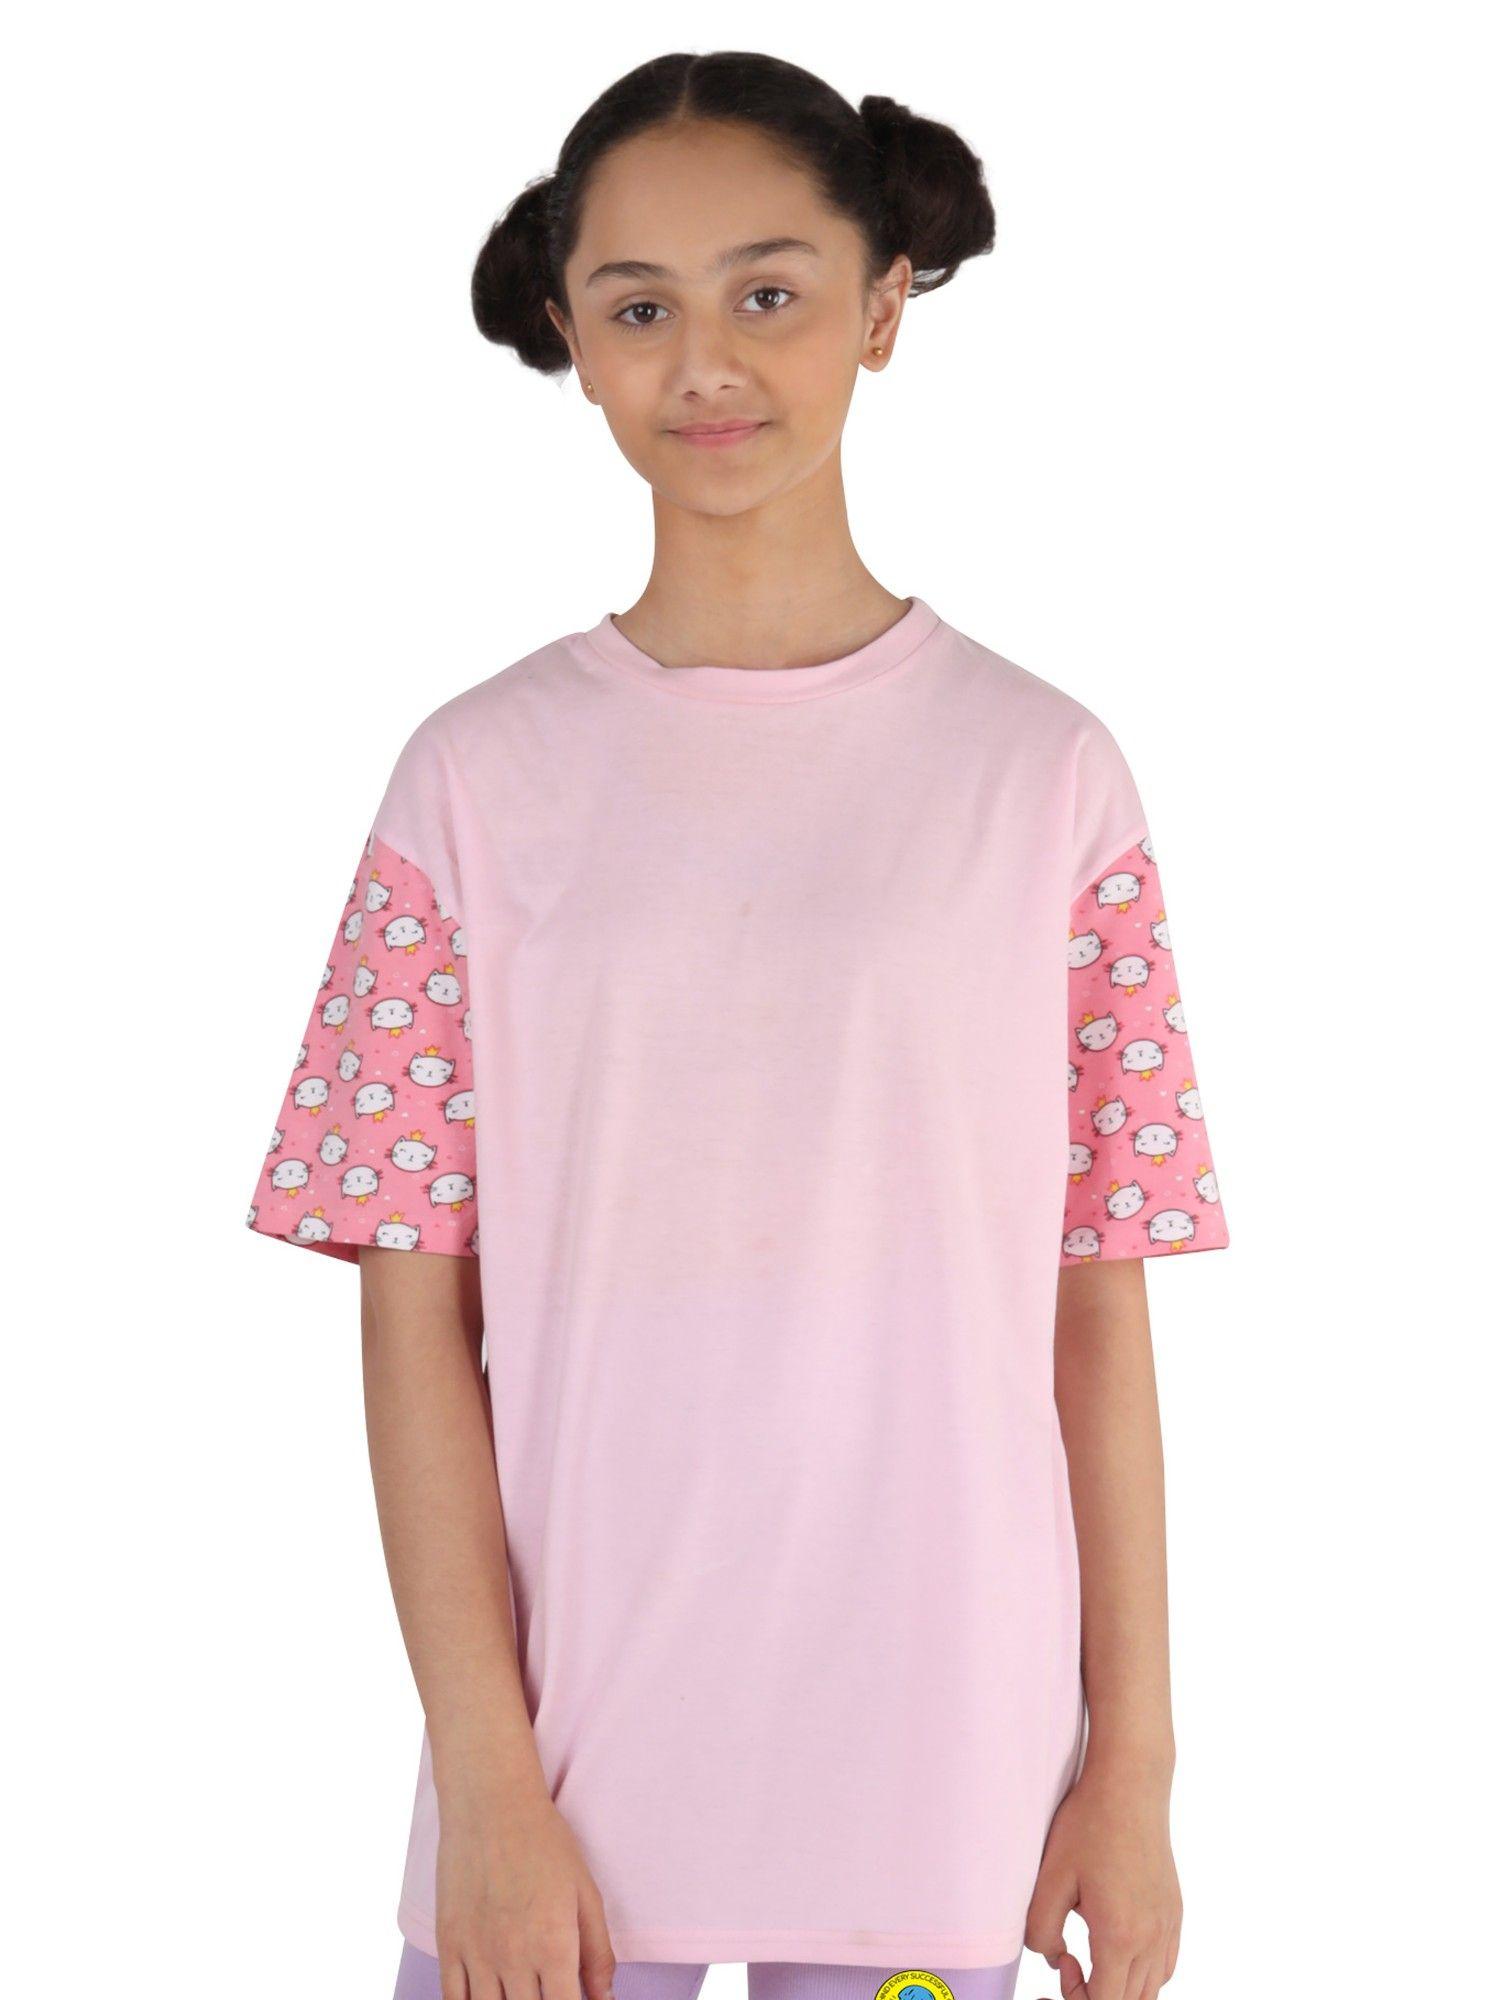 girls-pink-t-shirt-printed